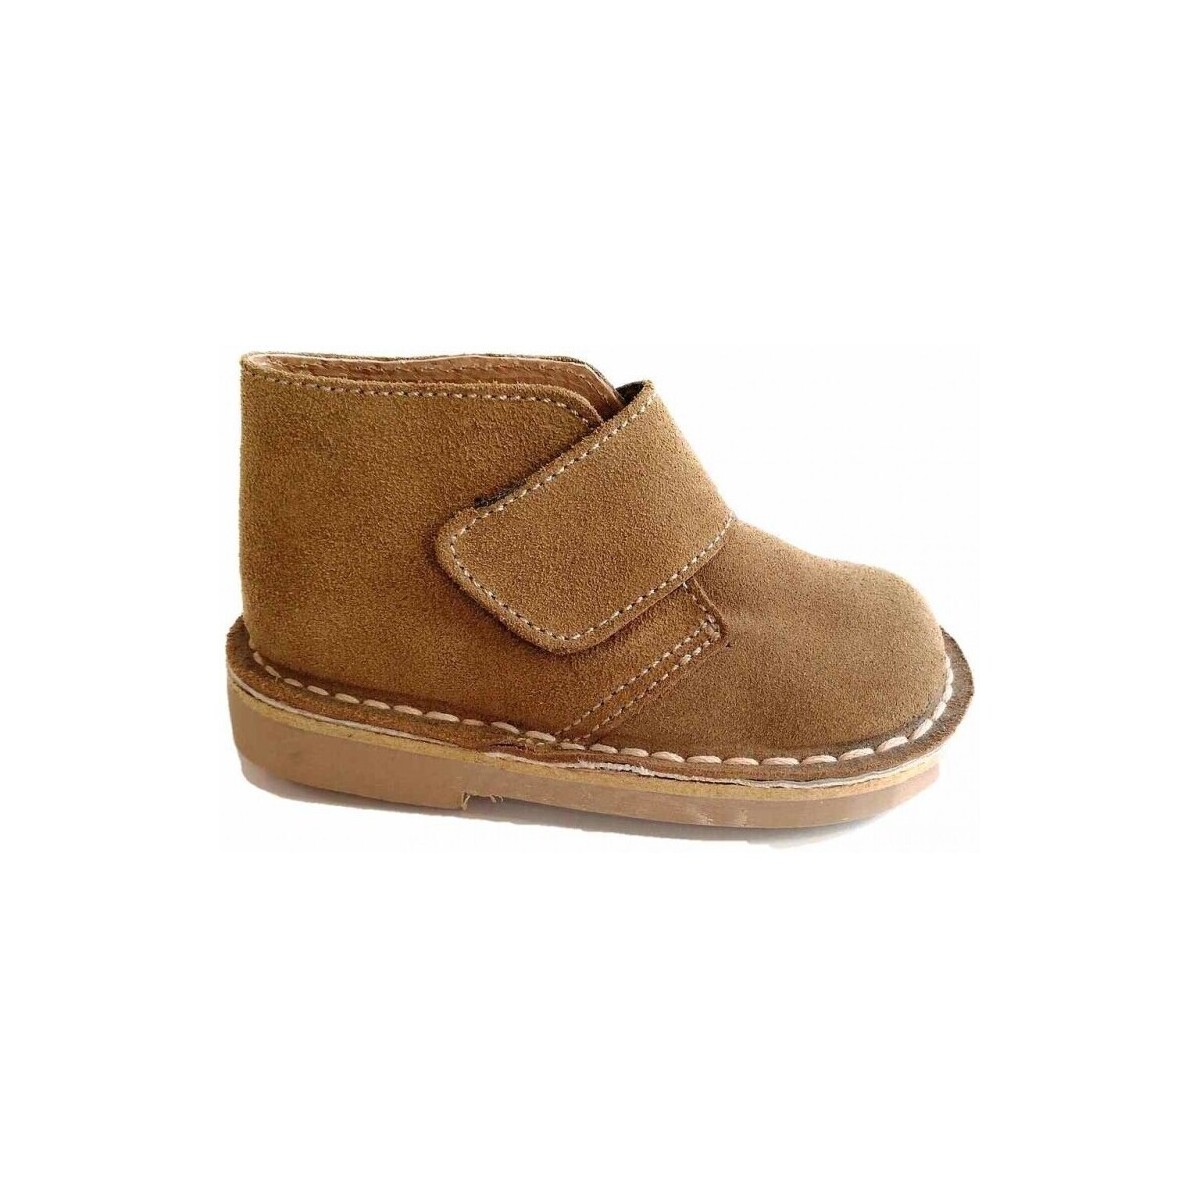 Παπούτσια Μπότες Colores 14297-18 Brown